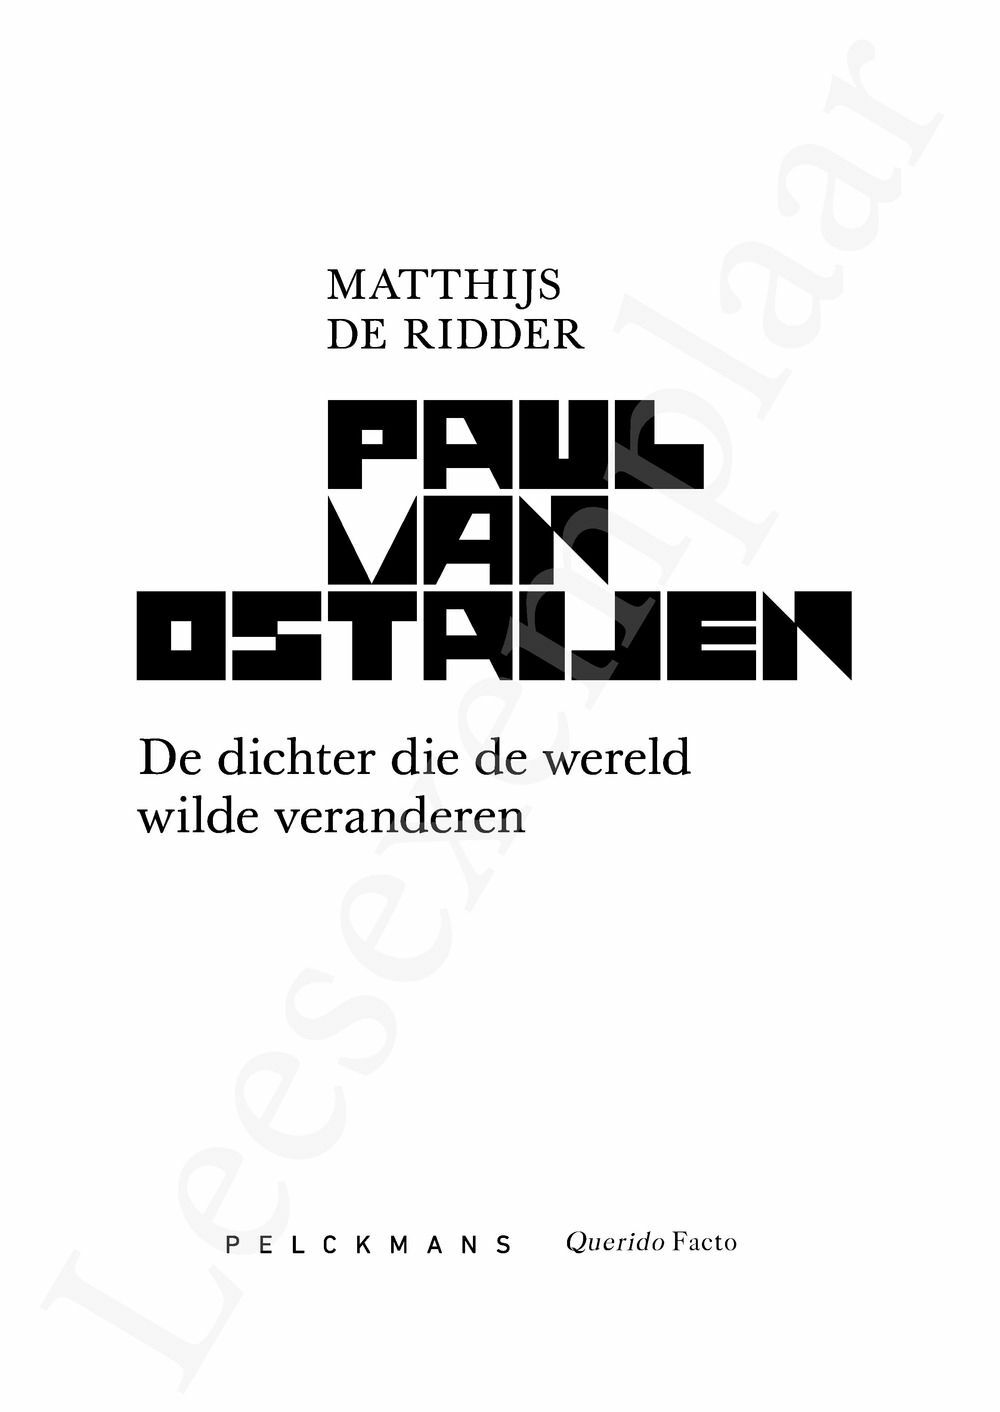 Preview: Paul van Ostaijen